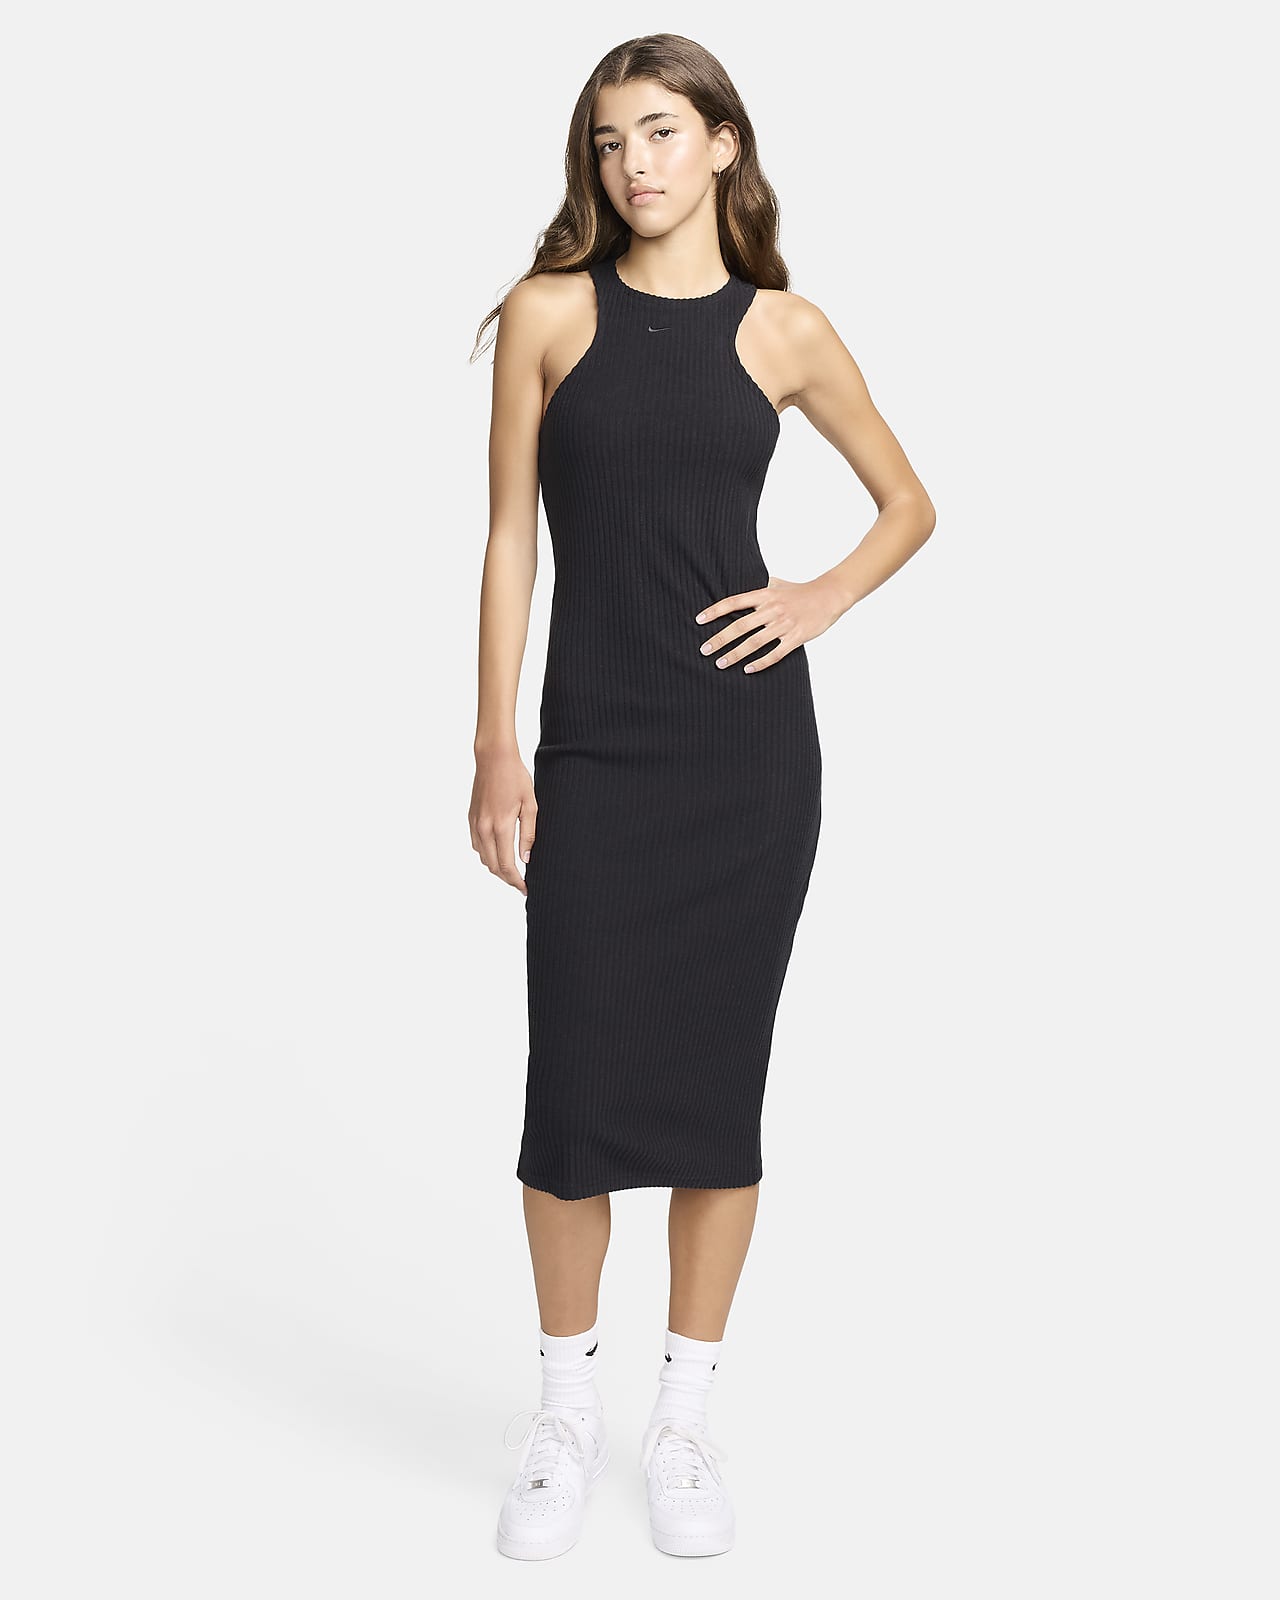 Dámské zeštíhlené žebrované šaty Nike Sportswear Chill Knit střední délky a bez rukávů